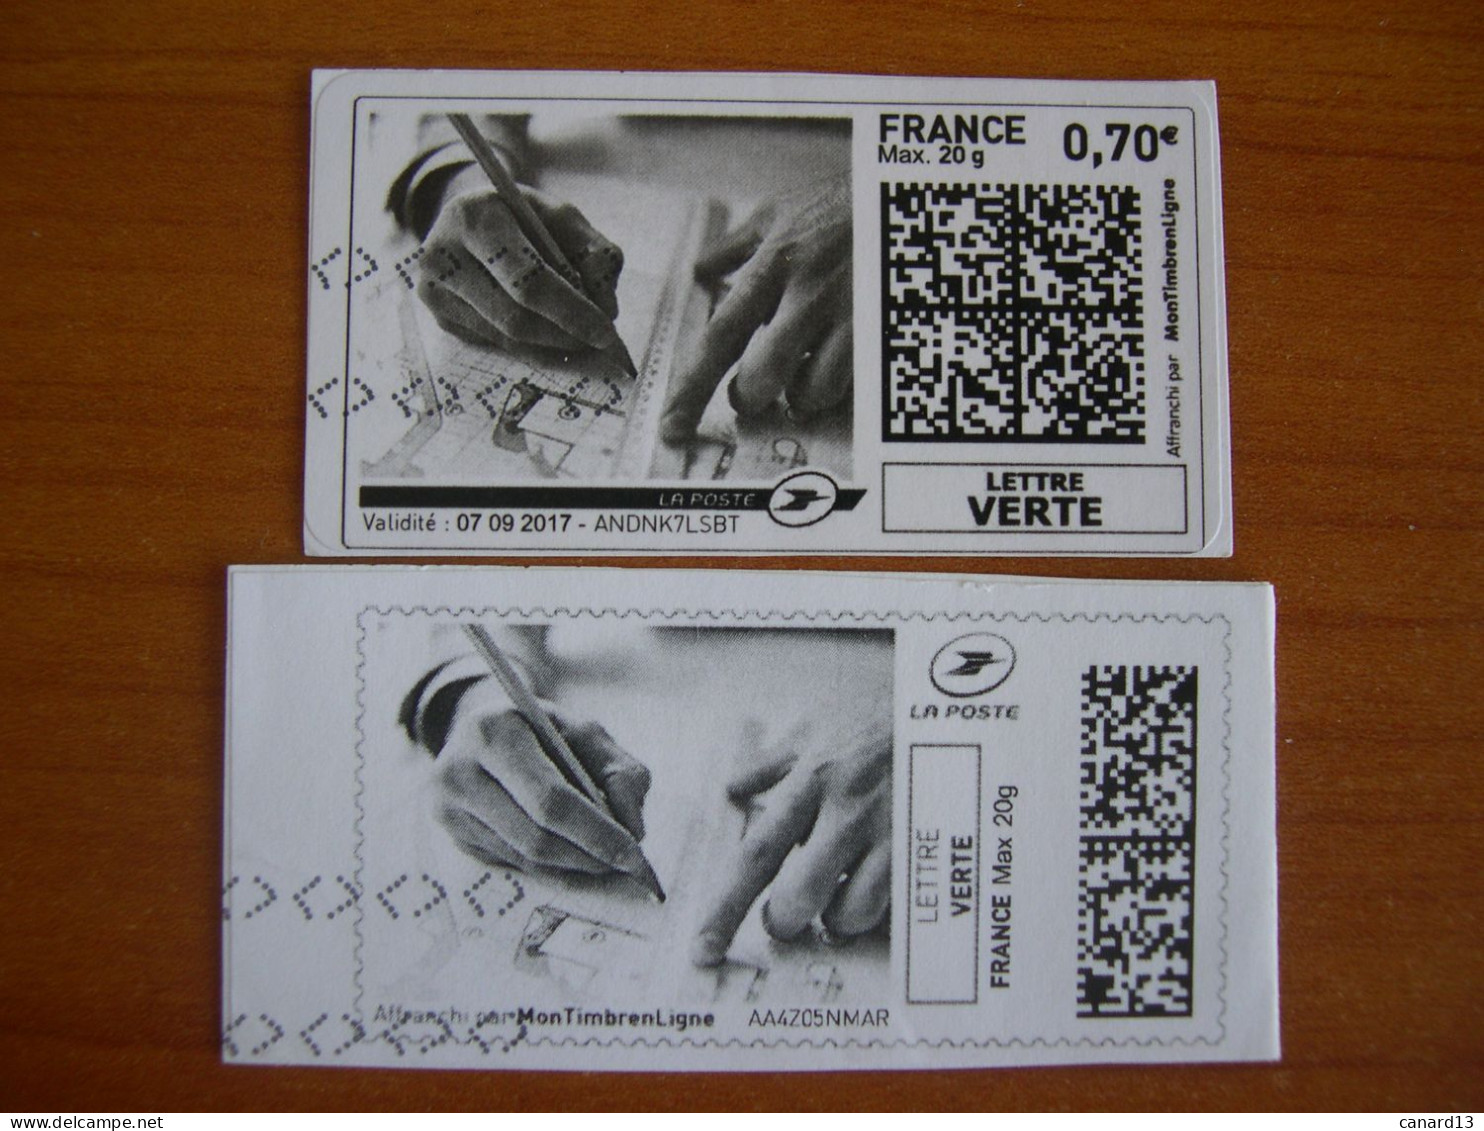 France Montimbrenligne Sur Fragment Dessin Industriel LV - Printable Stamps (Montimbrenligne)